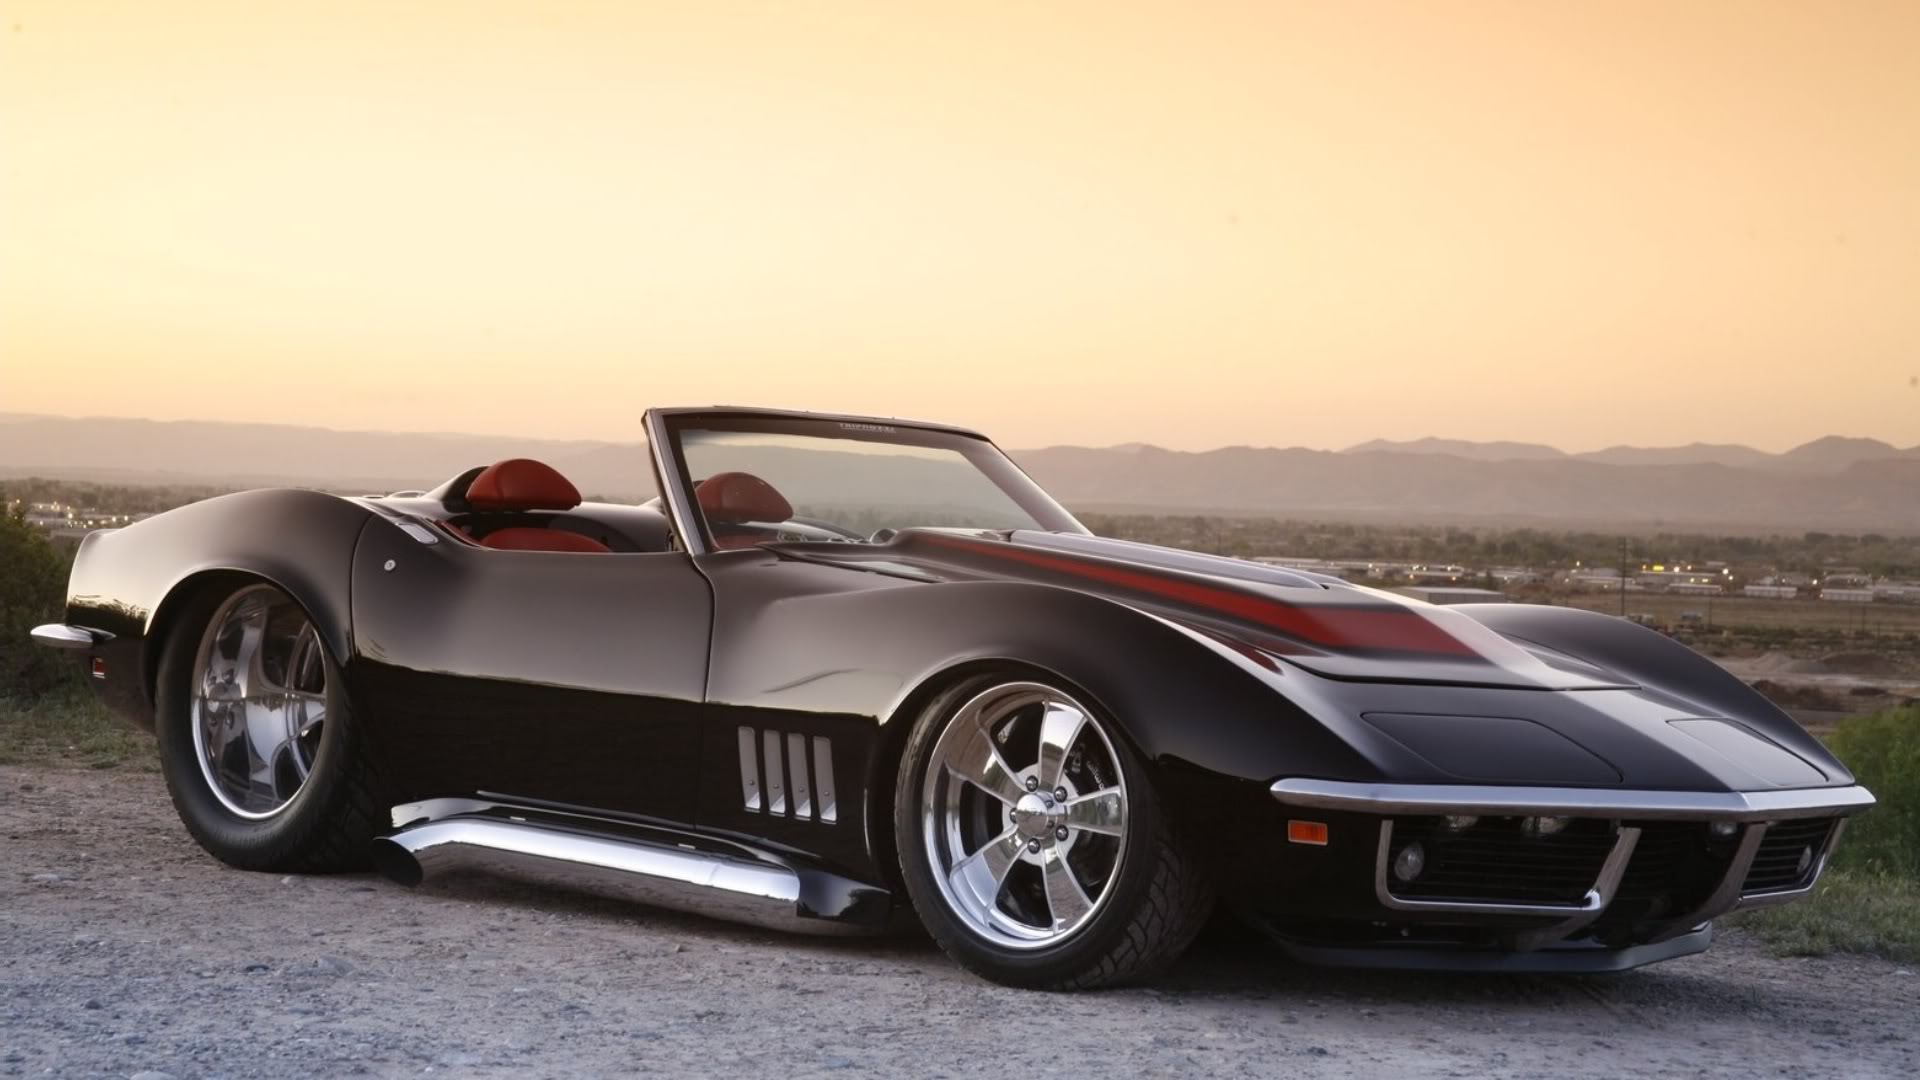 Black Corvette Stingray Wallpaper